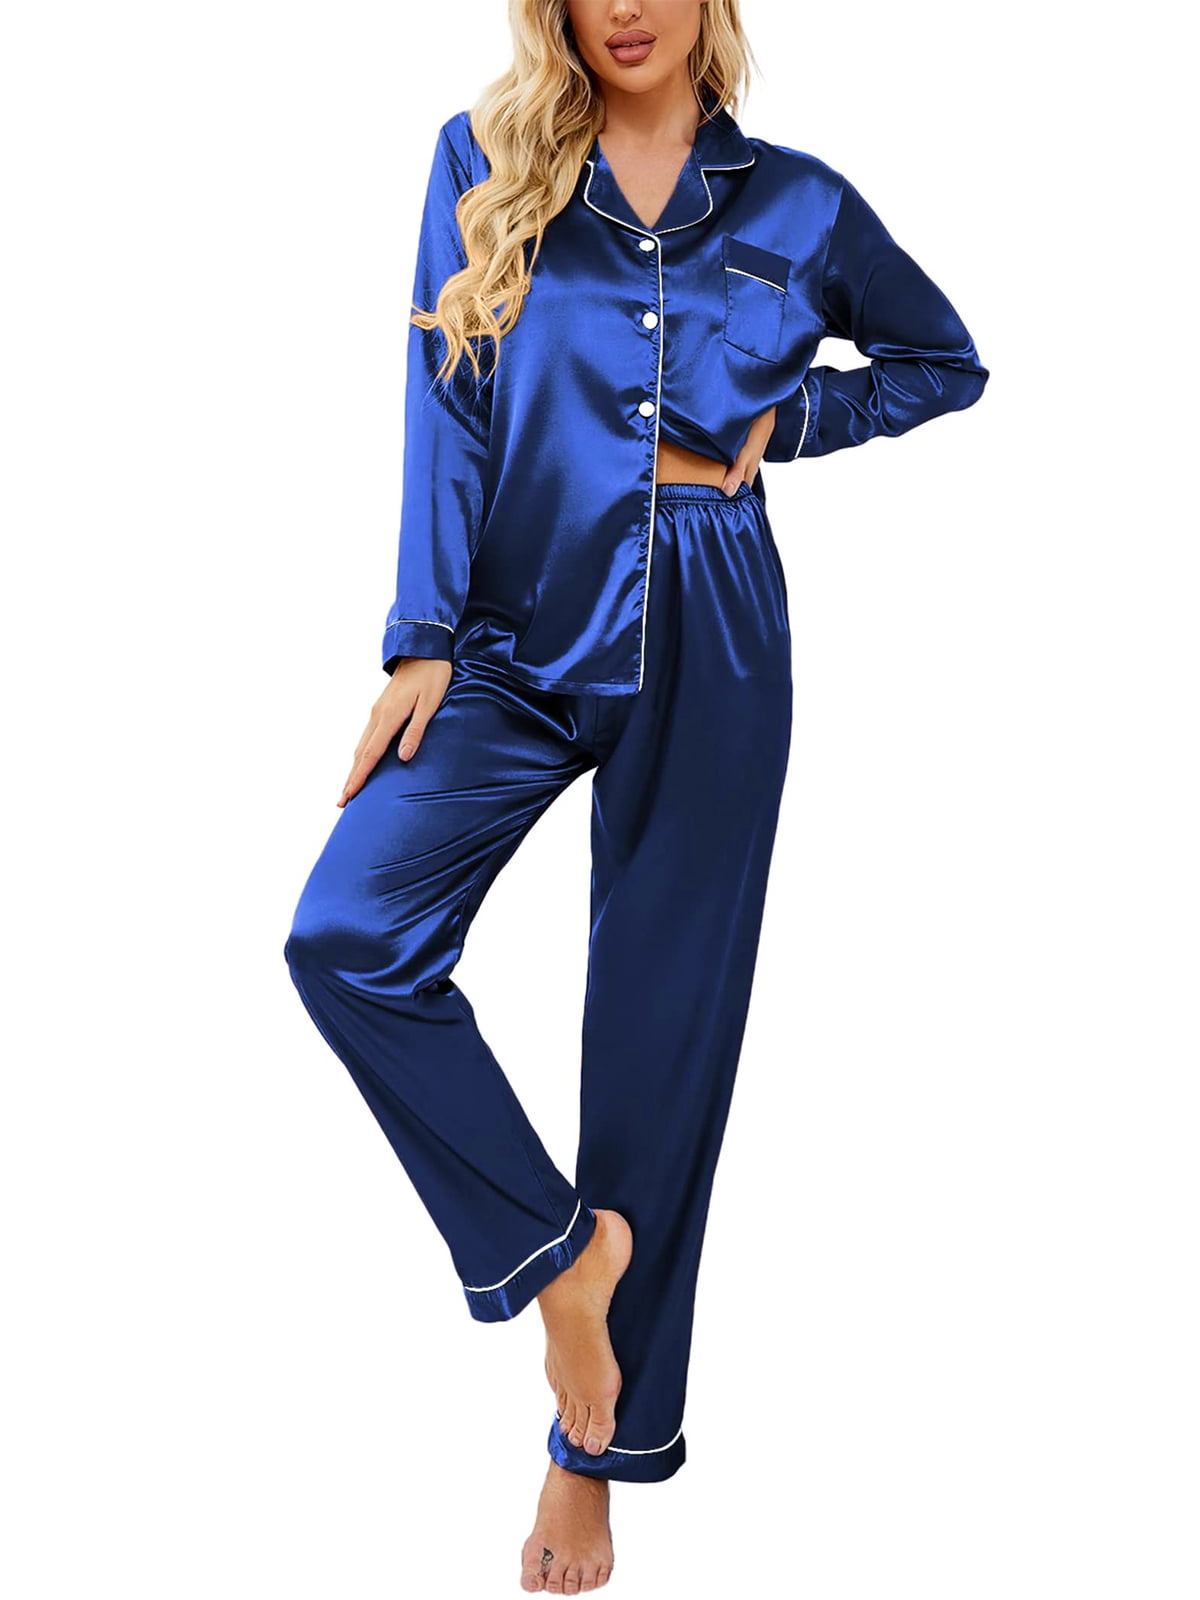 premium satin pajama set with silk feeling#pajamas#satin#sleepwear#Tony&Candice